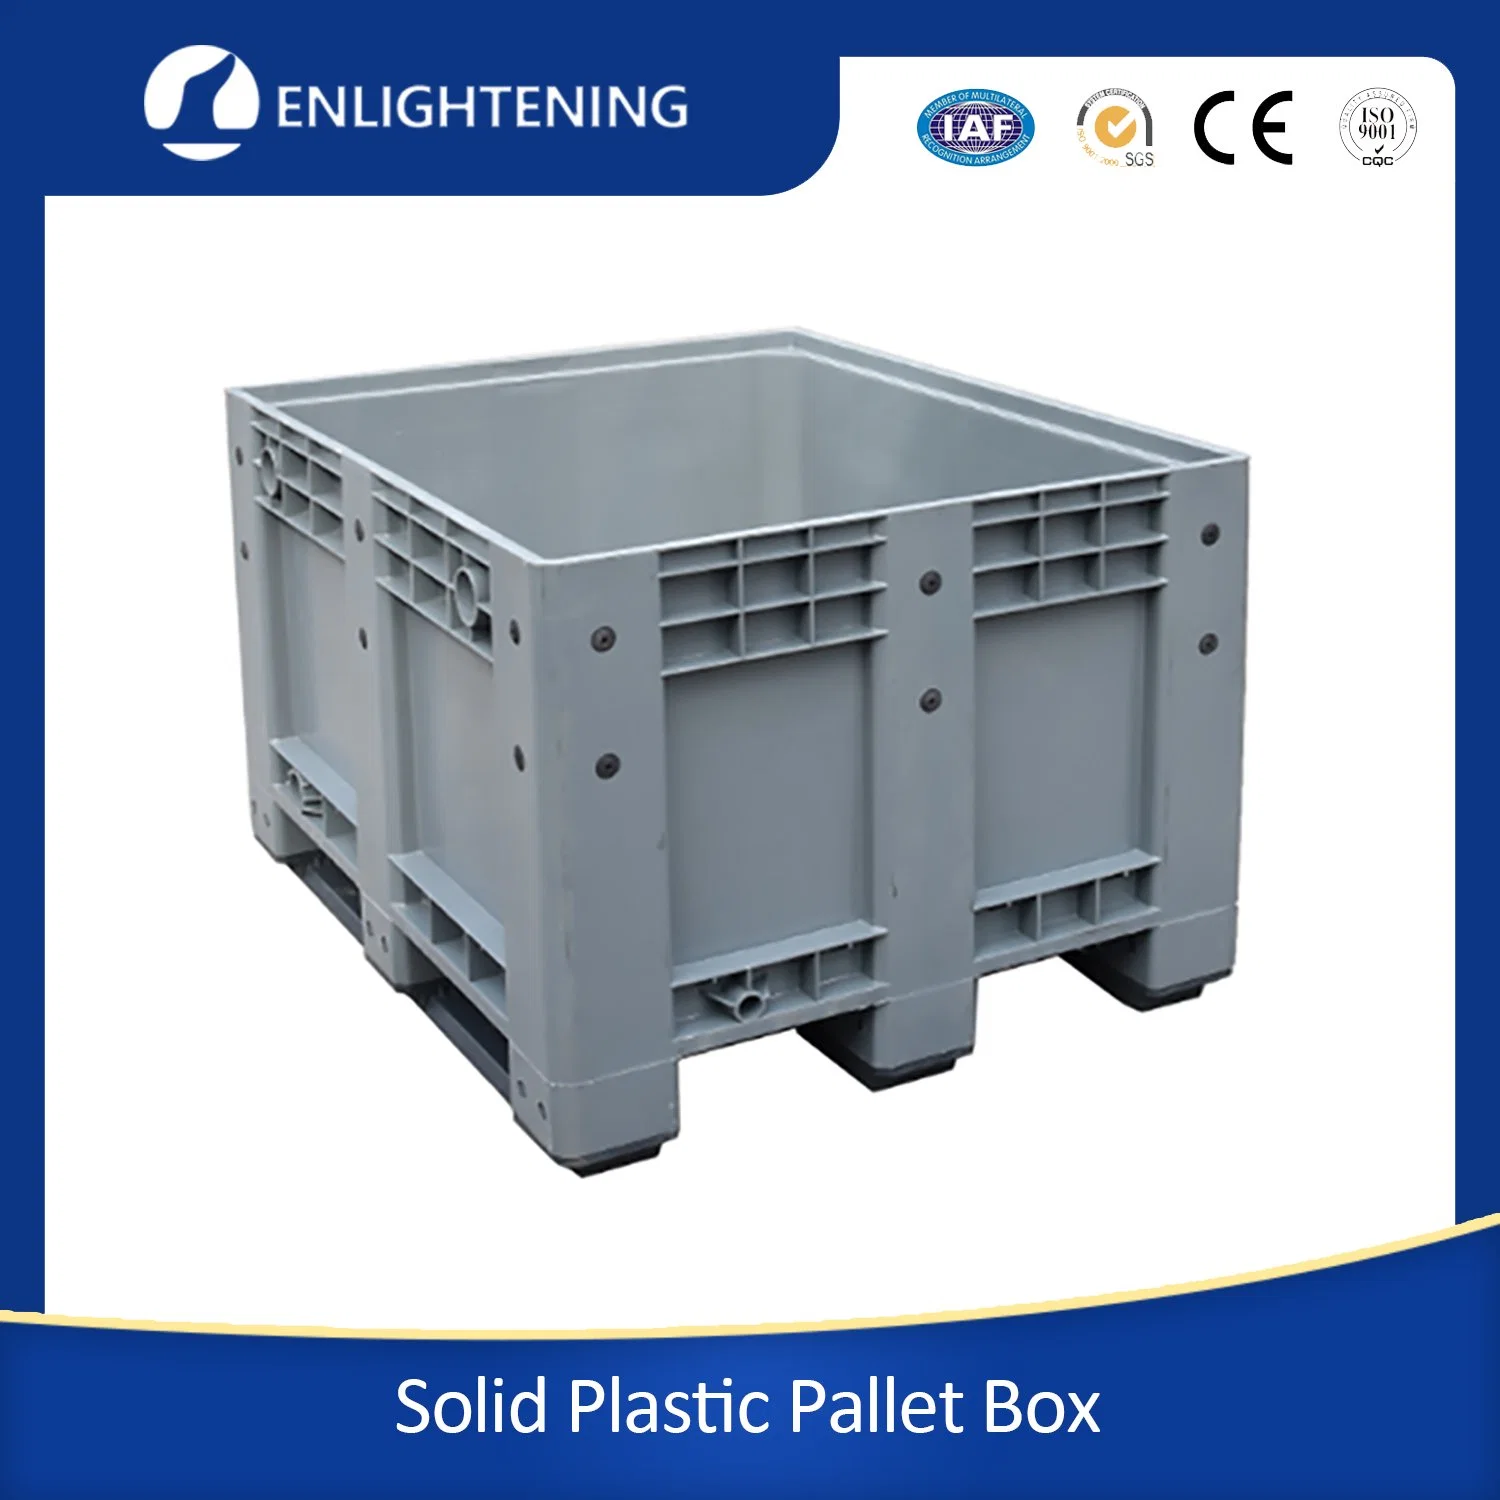 Equipamento de armazenamento de carga de caixa de paletes de plástico sólido de alta qualidade